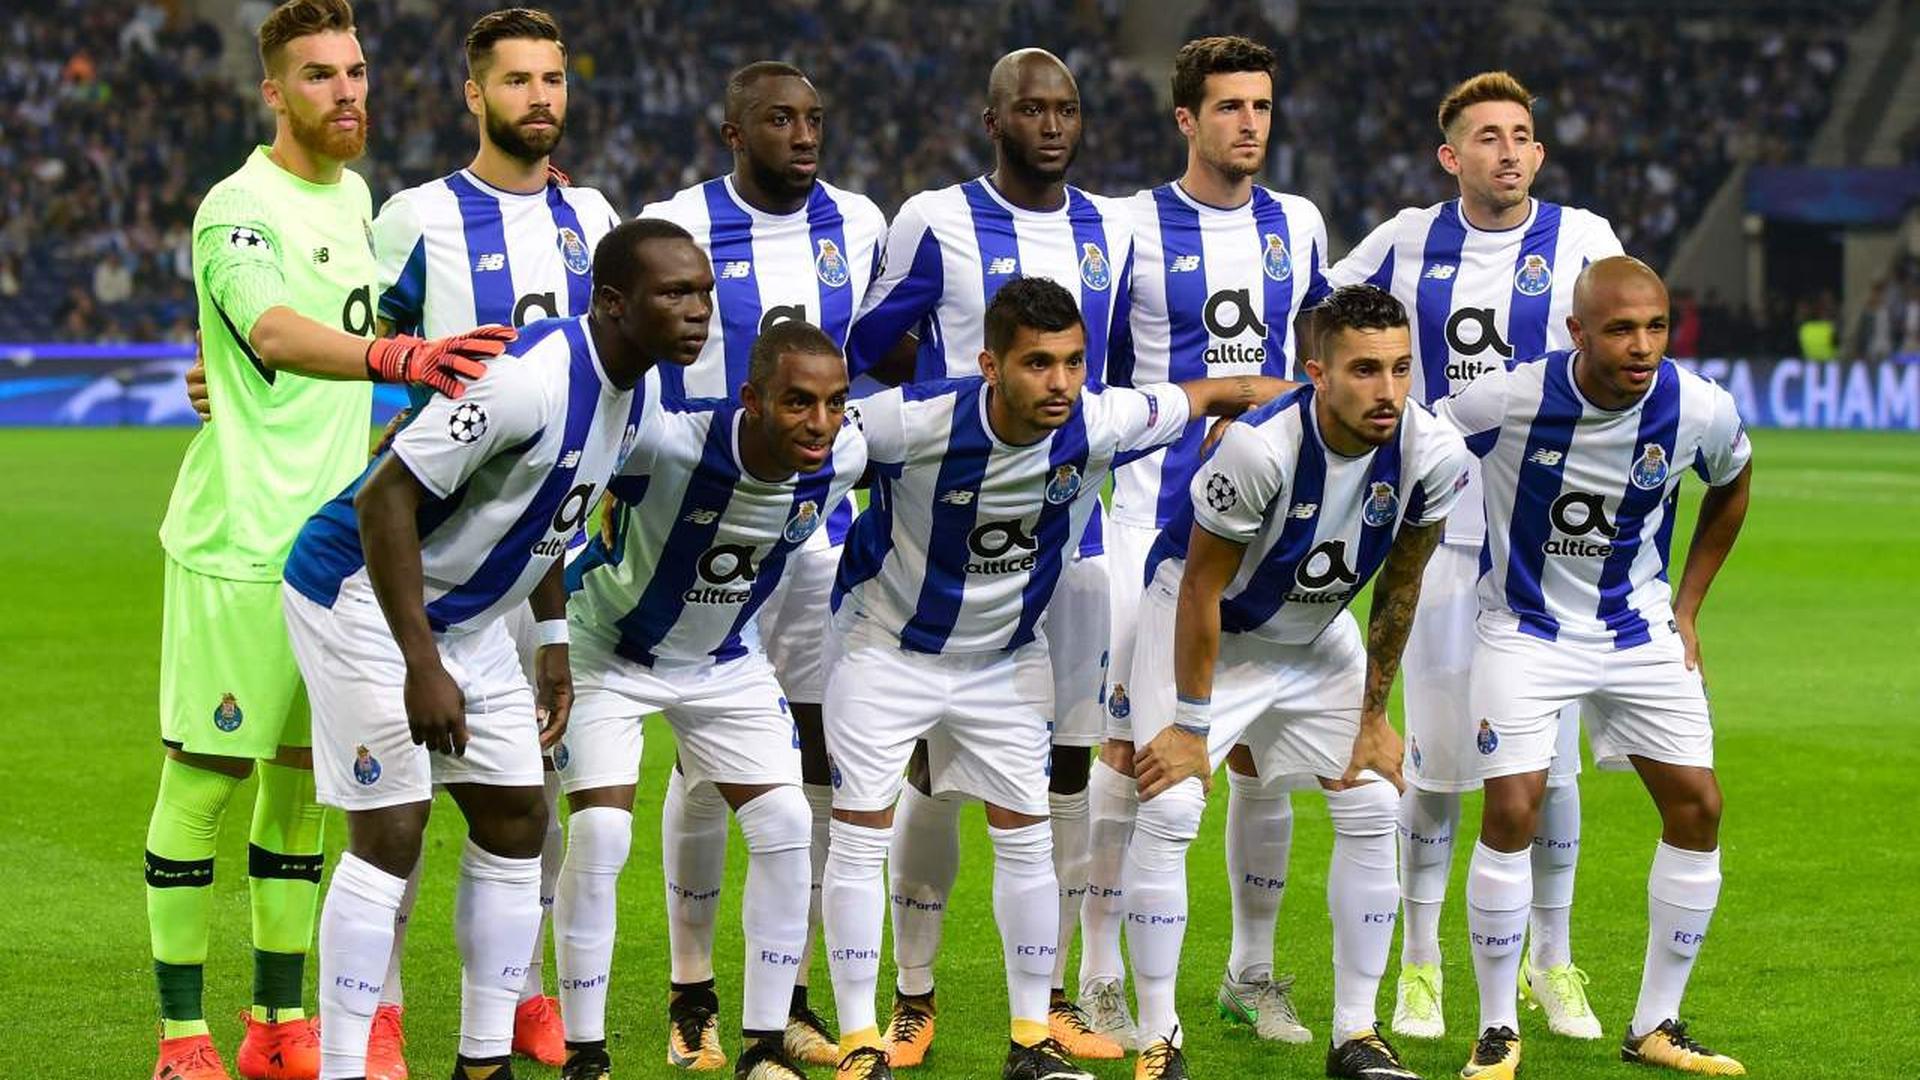 O Porto é a equipa que tem uma situação mais fácil nas competições europeias